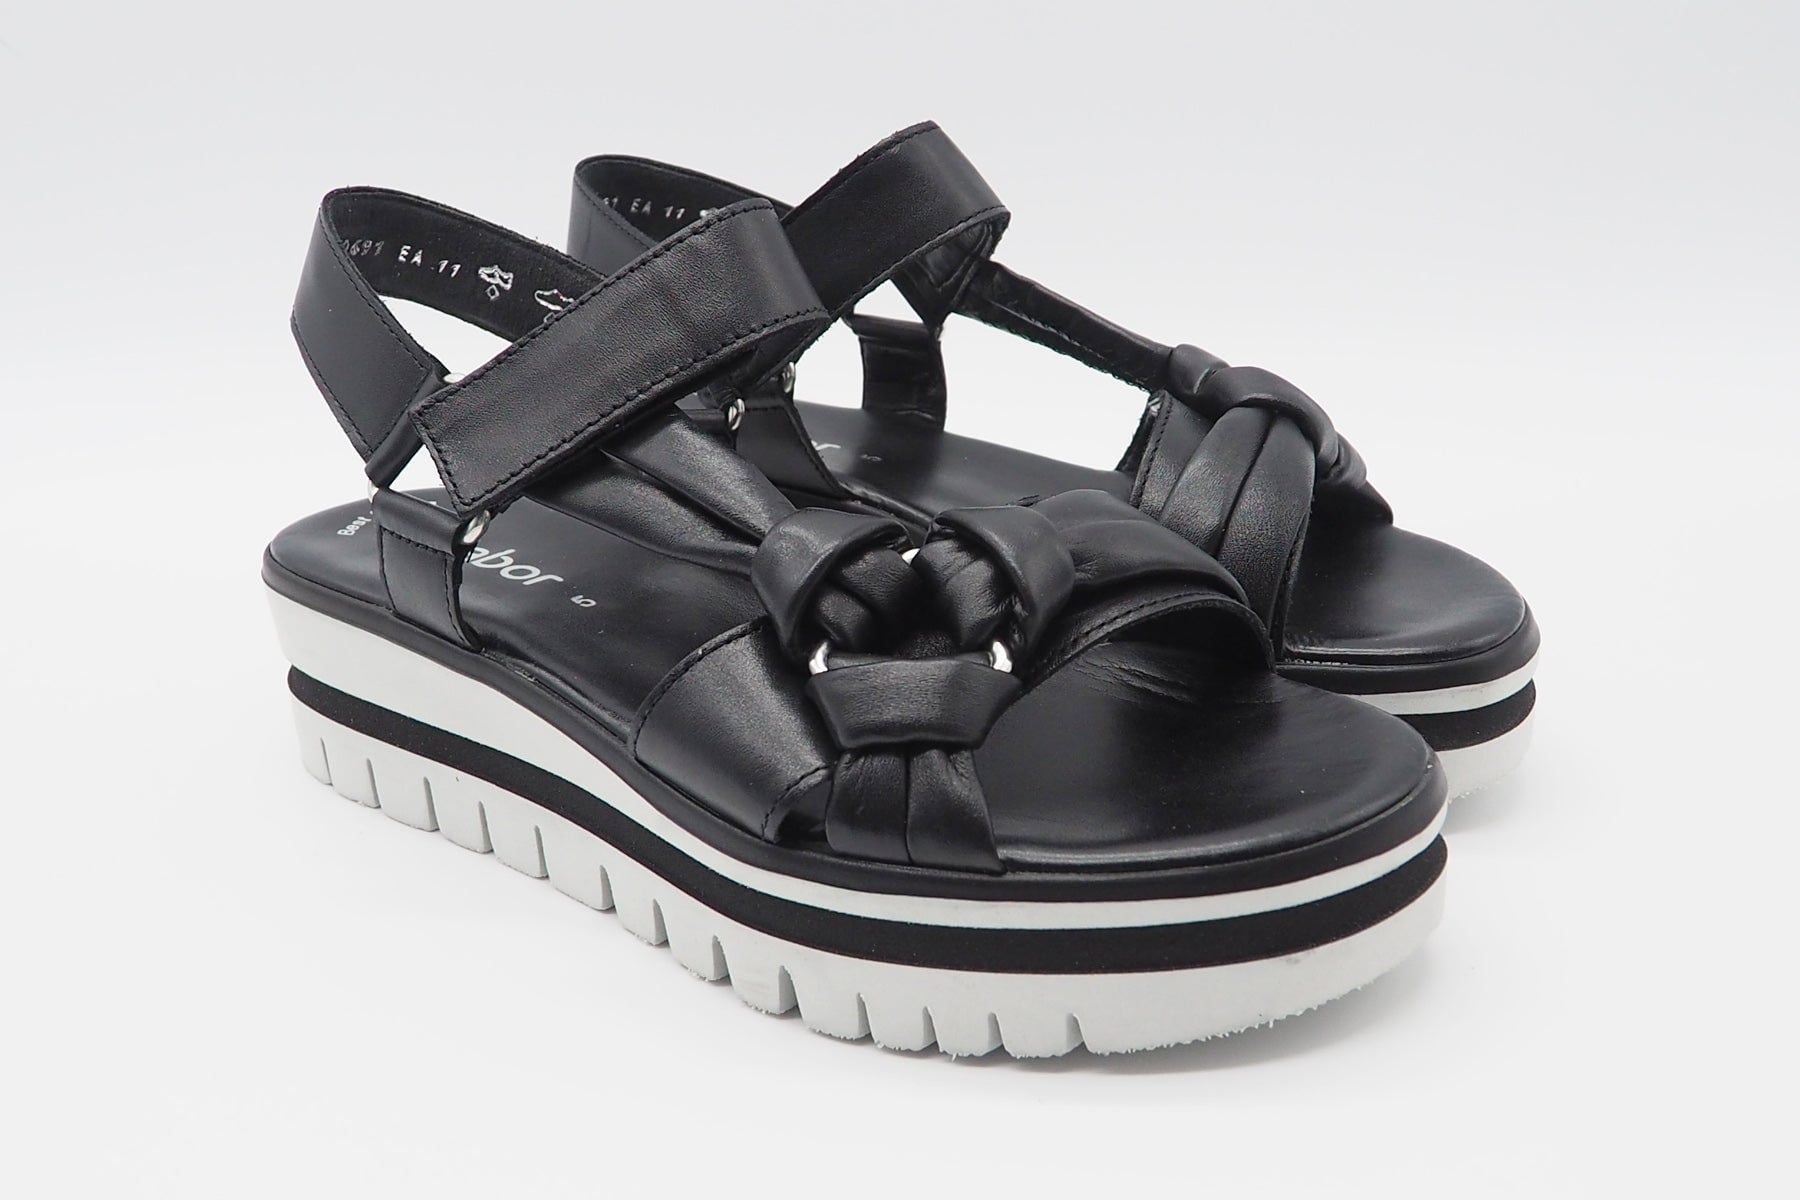 Damen Absatz-Sandale aus Glattleder in Schwarz - Absatz 5cm Damen Sandalen Gabor 